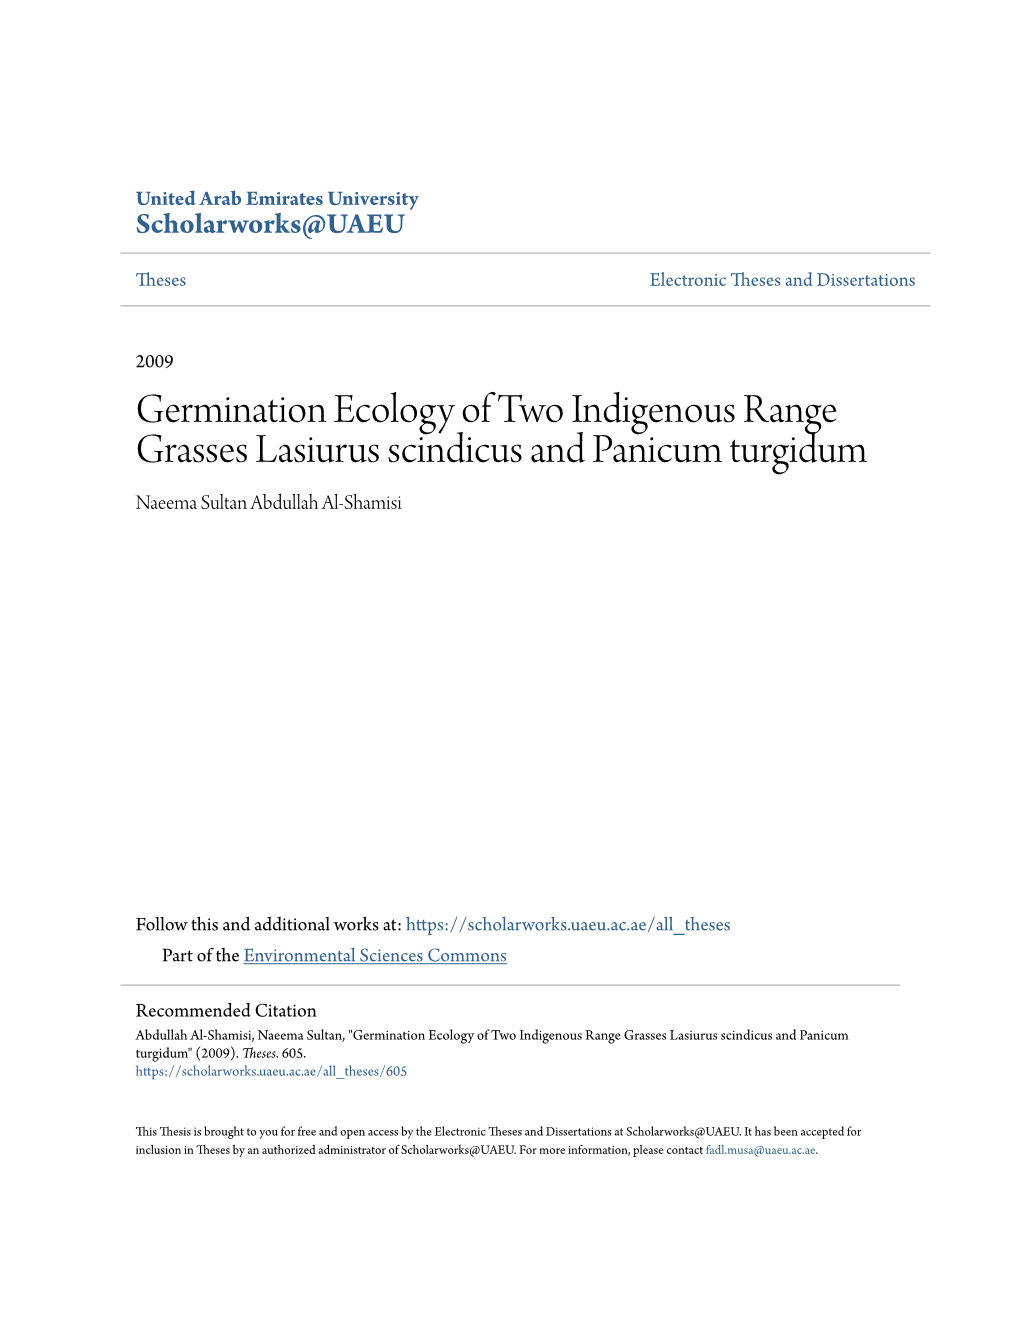 Germination Ecology of Two Indigenous Range Grasses Lasiurus Scindicus and Panicum Turgidum Naeema Sultan Abdullah Al-Shamisi